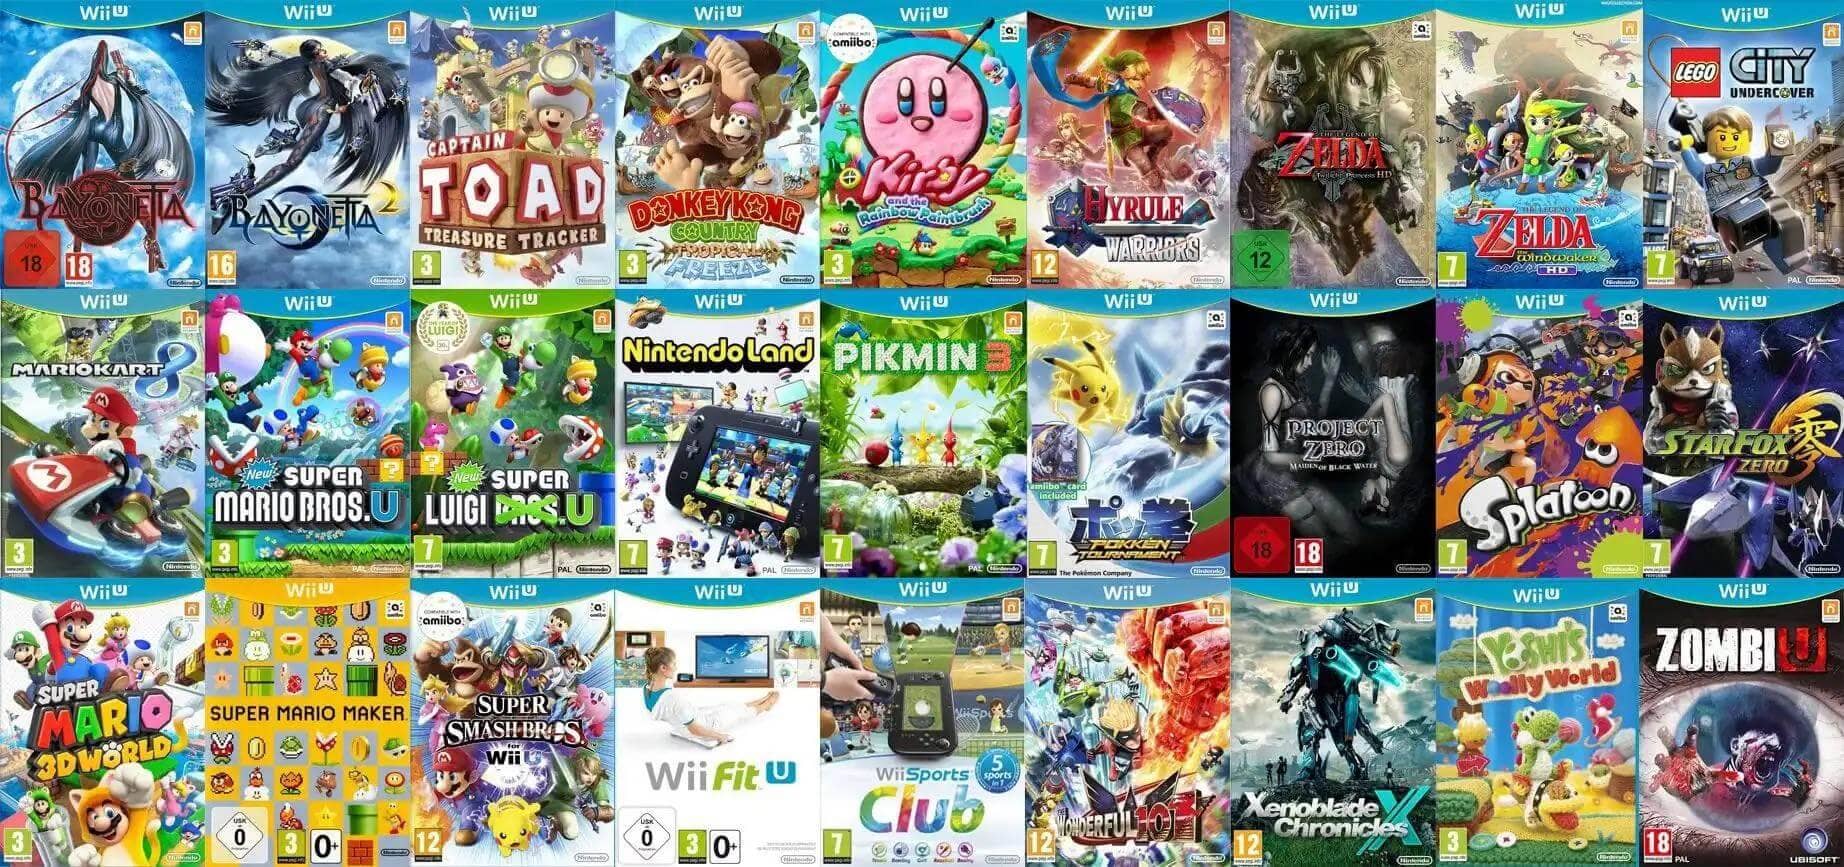 Ouais, la Wii U propose aussi de très bons jeux